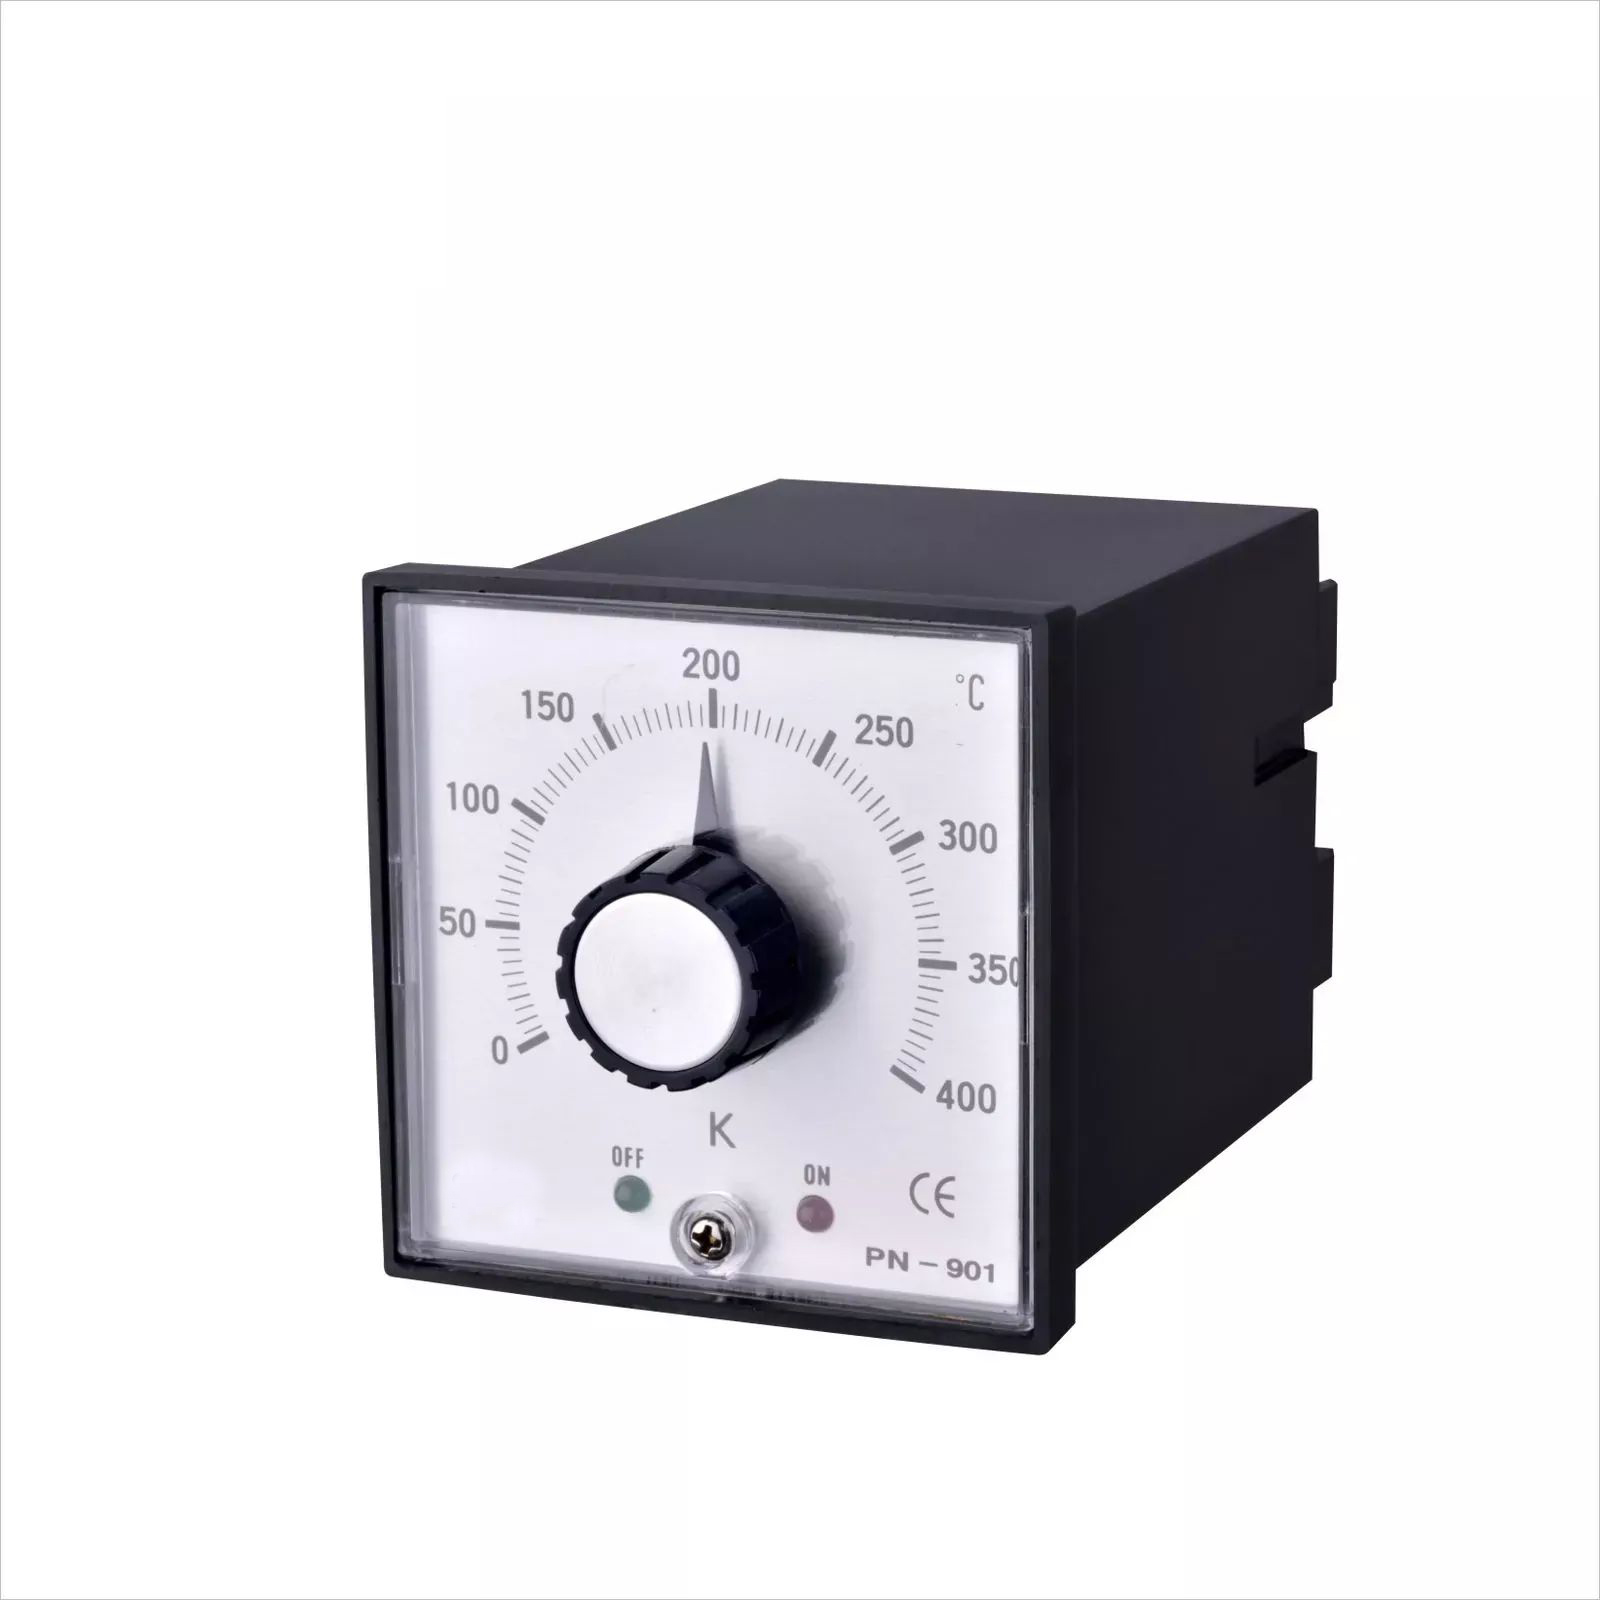 PN-901 analog digital display microcomputer temperature controller